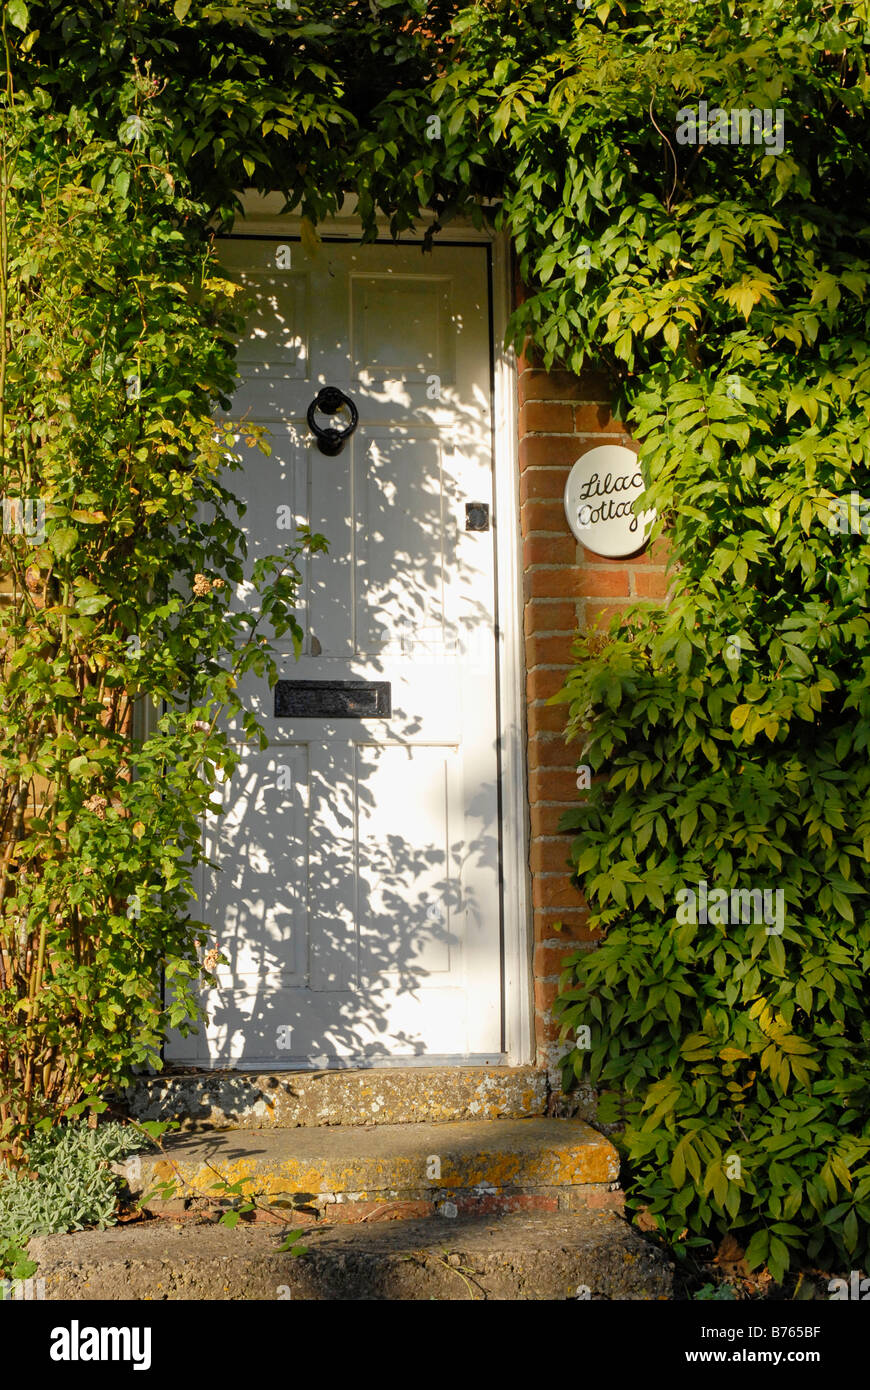 Livre blanc de la porte d'entrée country house, avec le nom 'Lilac Cottage" sur la plaque d'à côté porte et entouré de feuilles vertes Banque D'Images